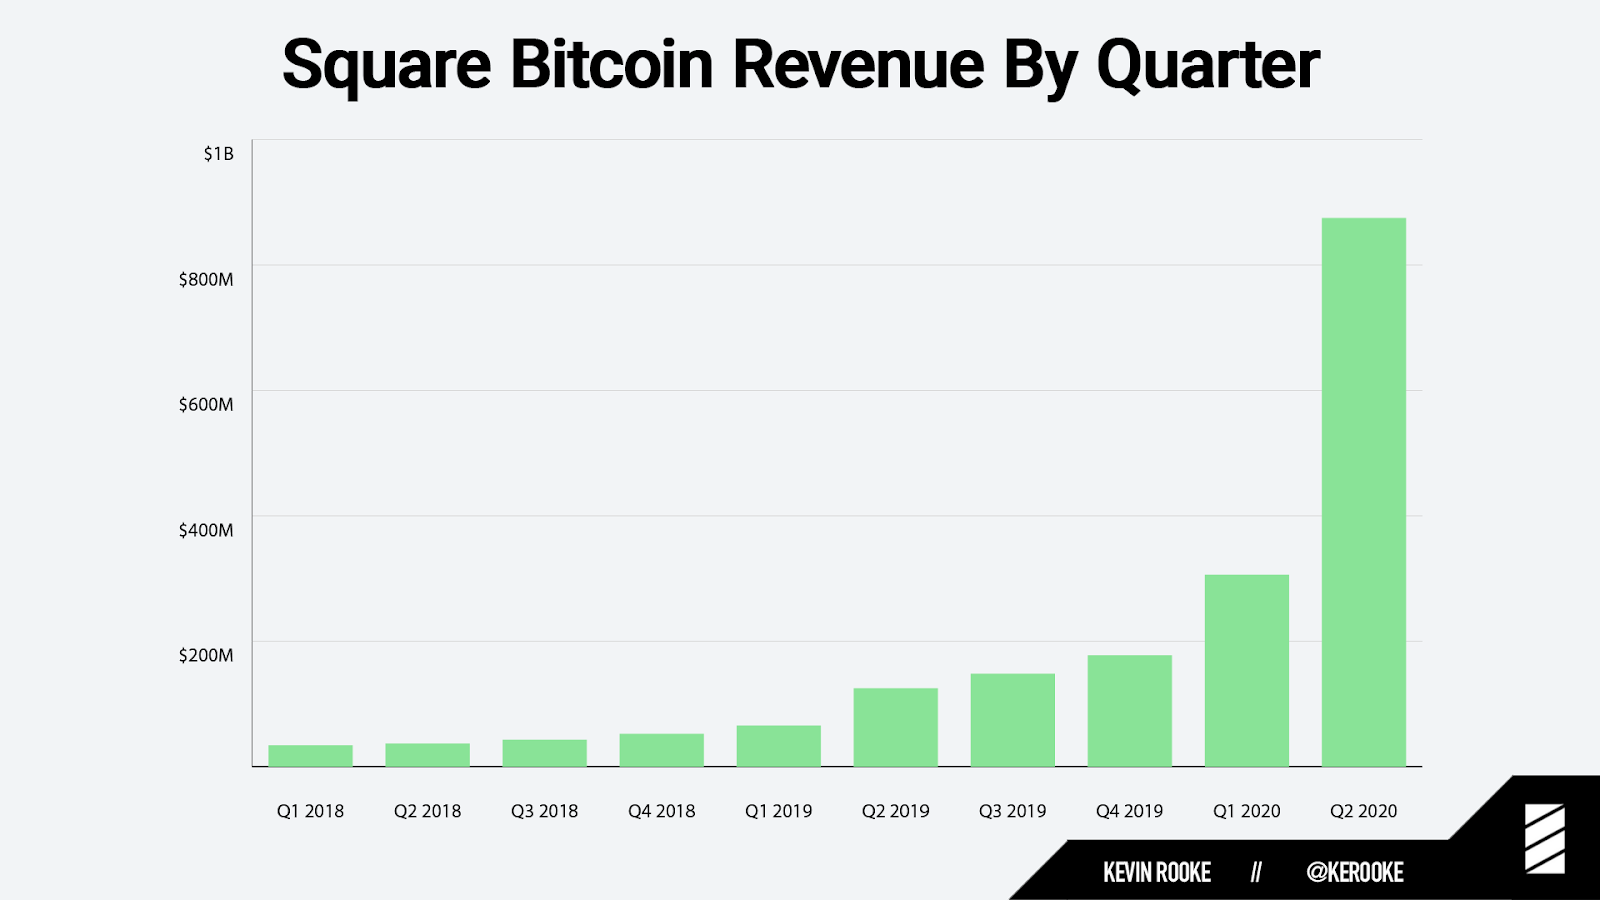 Square quarterly Bitcoin revenue